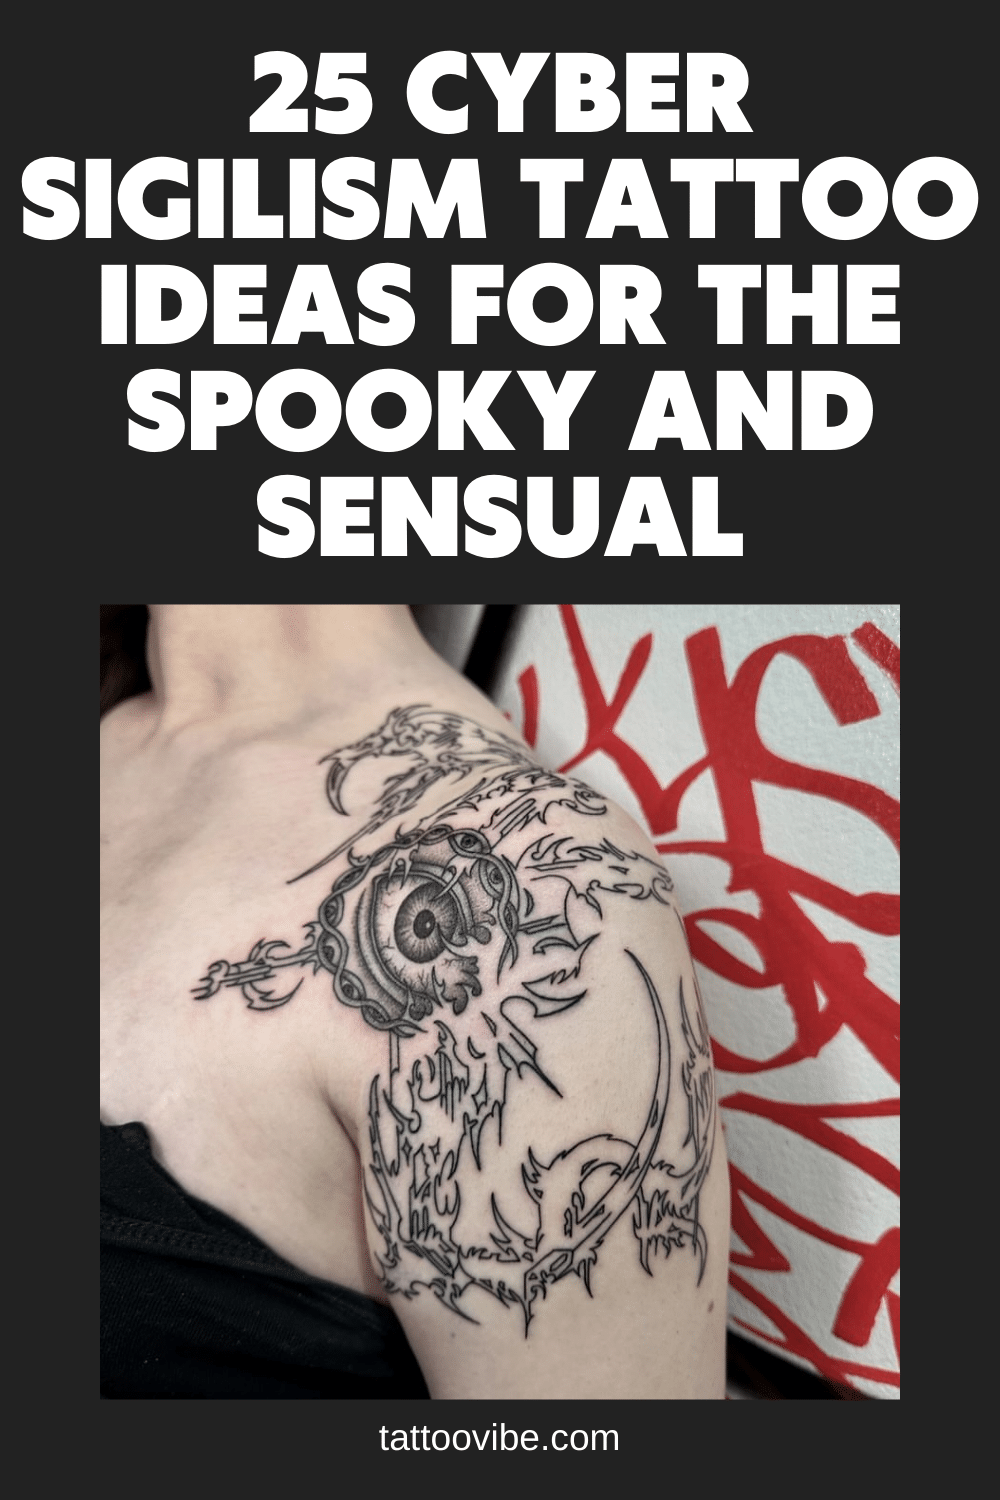 25 Cyber-Sigilismus Tattoo-Ideen für die gespenstische und sinnliche